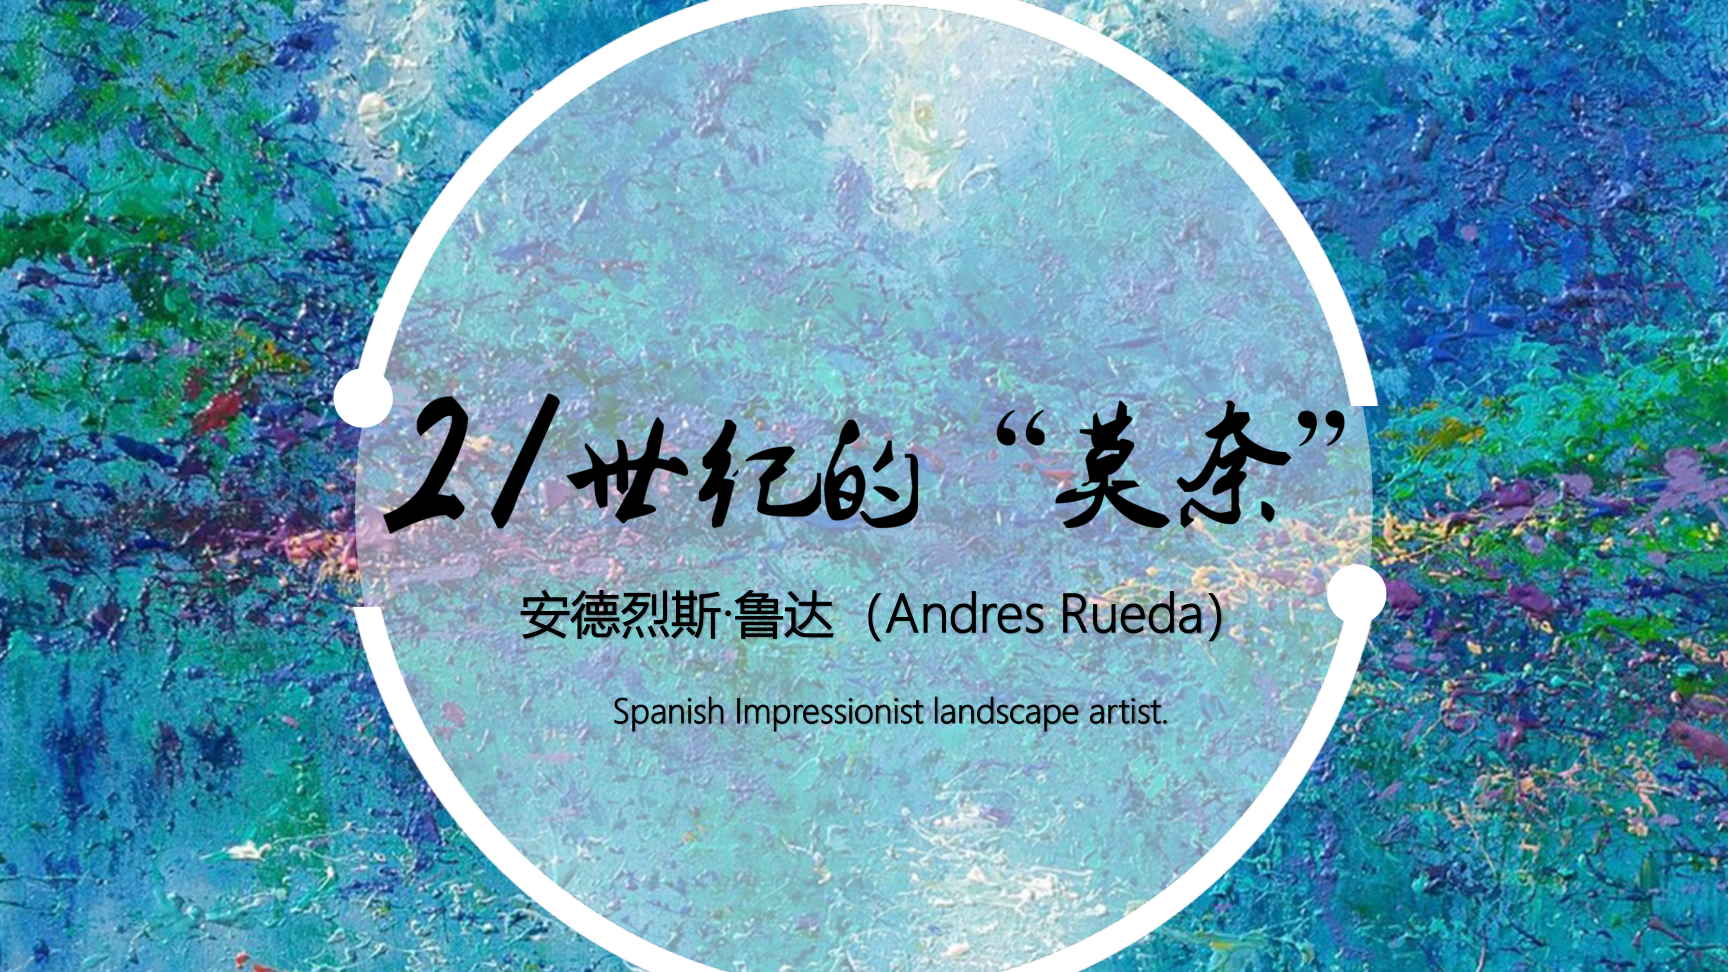 【21世纪“莫奈”】-西班牙杰出印象派巡展——安德烈斯·鲁达